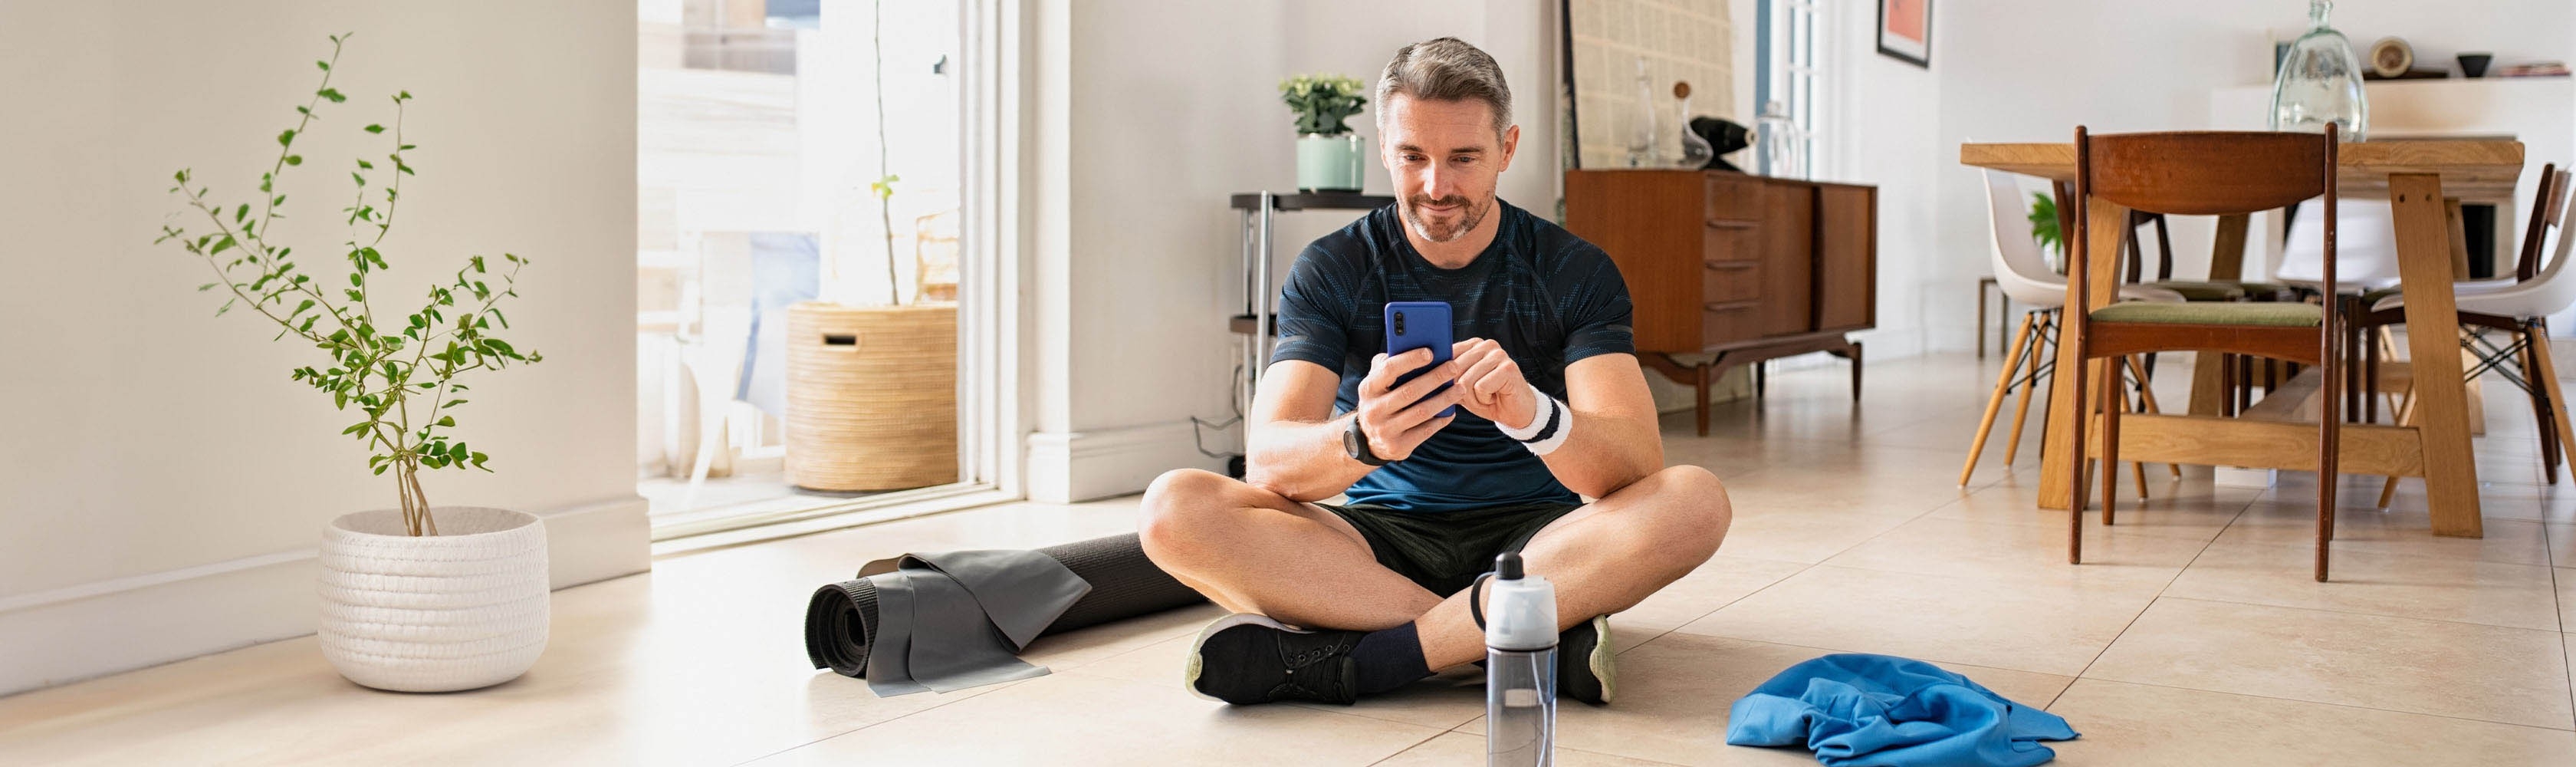 Un uomo in tenuta sportiva, seduto a terra, utilizza l’app sul suo smartphone.